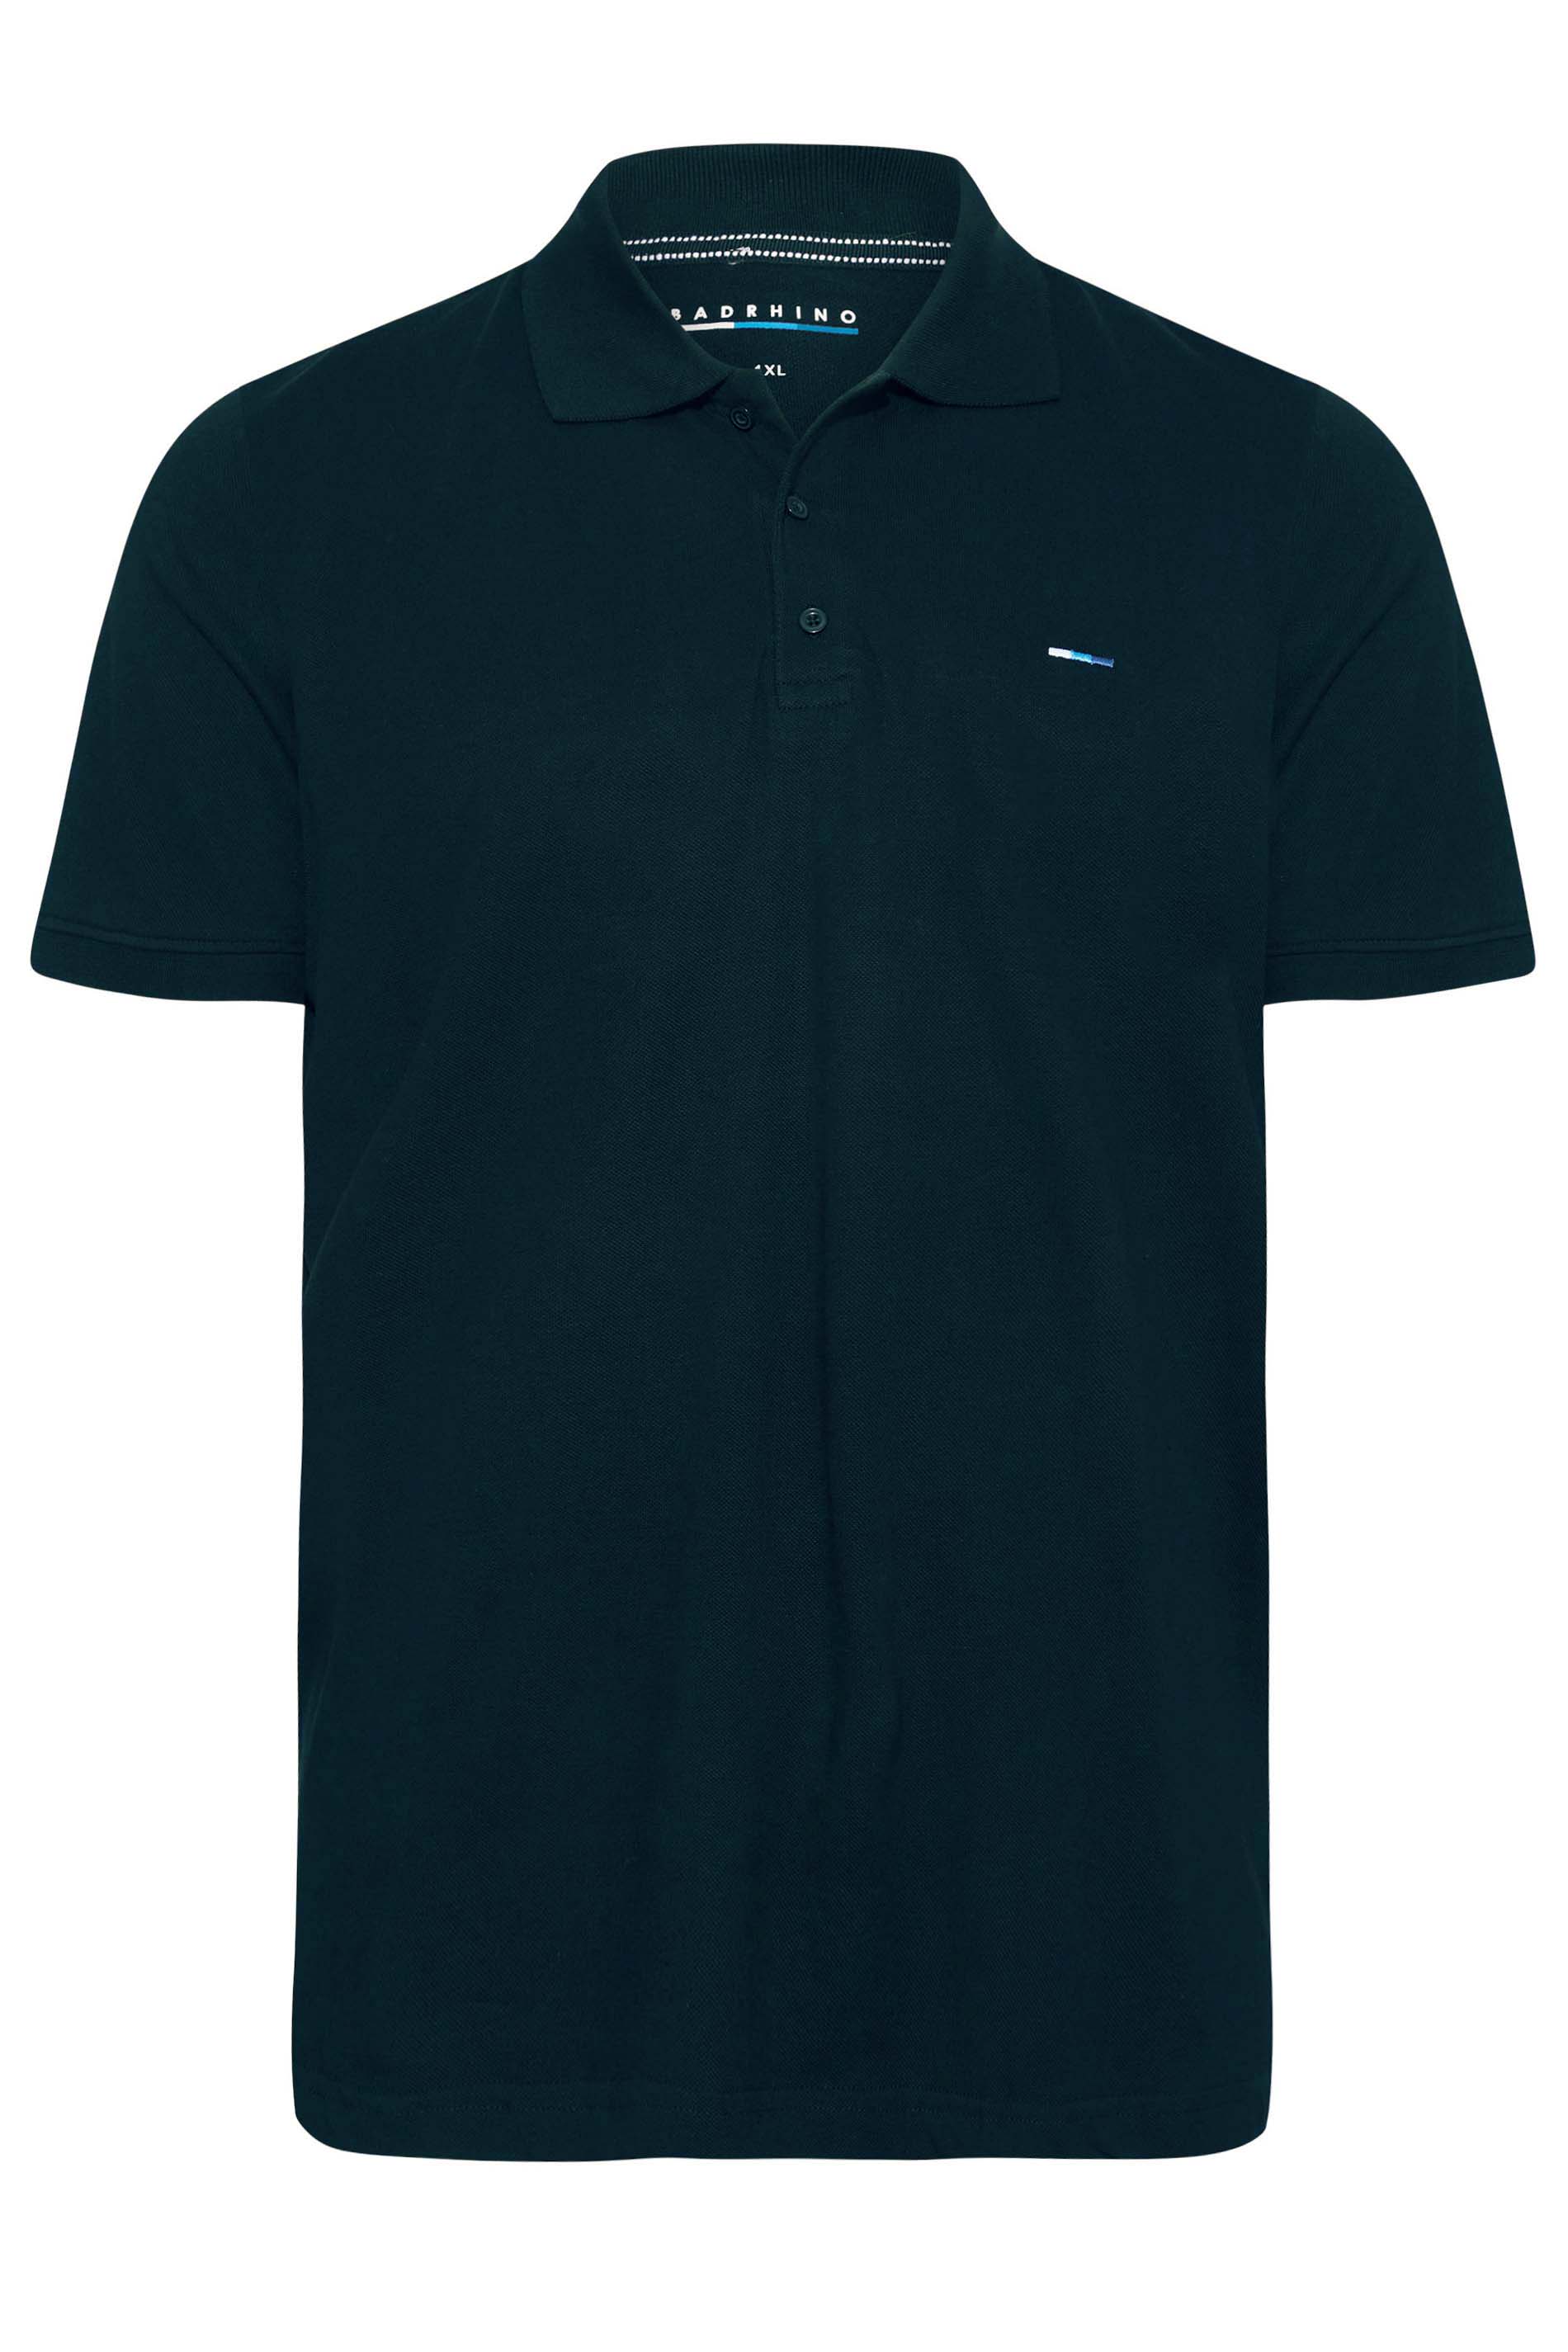 BadRhino Navy Blue Essential Polo Shirt | BadRhino 3